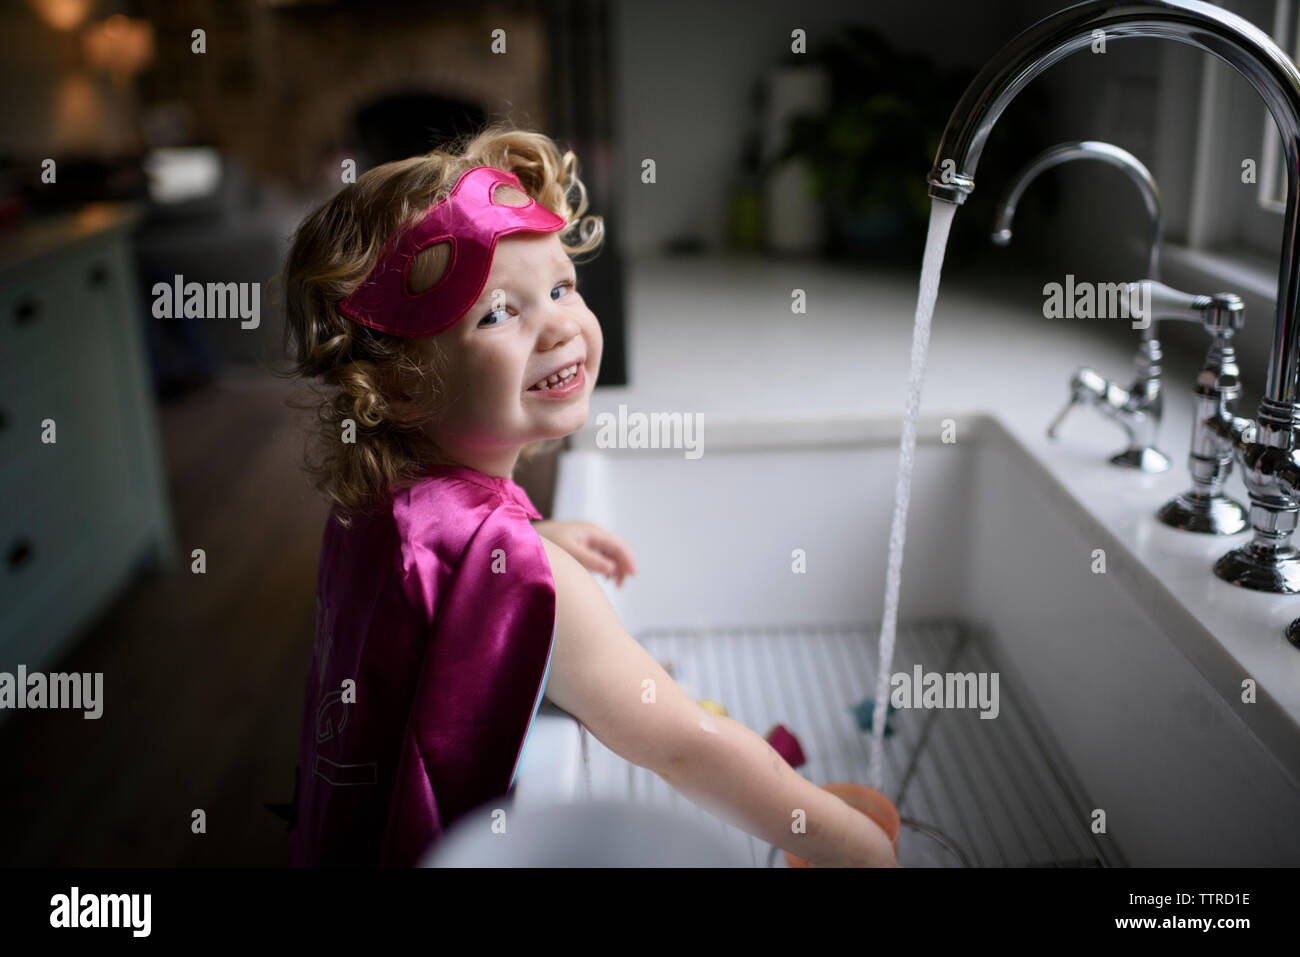 Ritratto di ragazza sorridente indossando il costume del supereroe di lavarsi le mani nel lavello da cucina mentre in piedi a casa Foto Stock